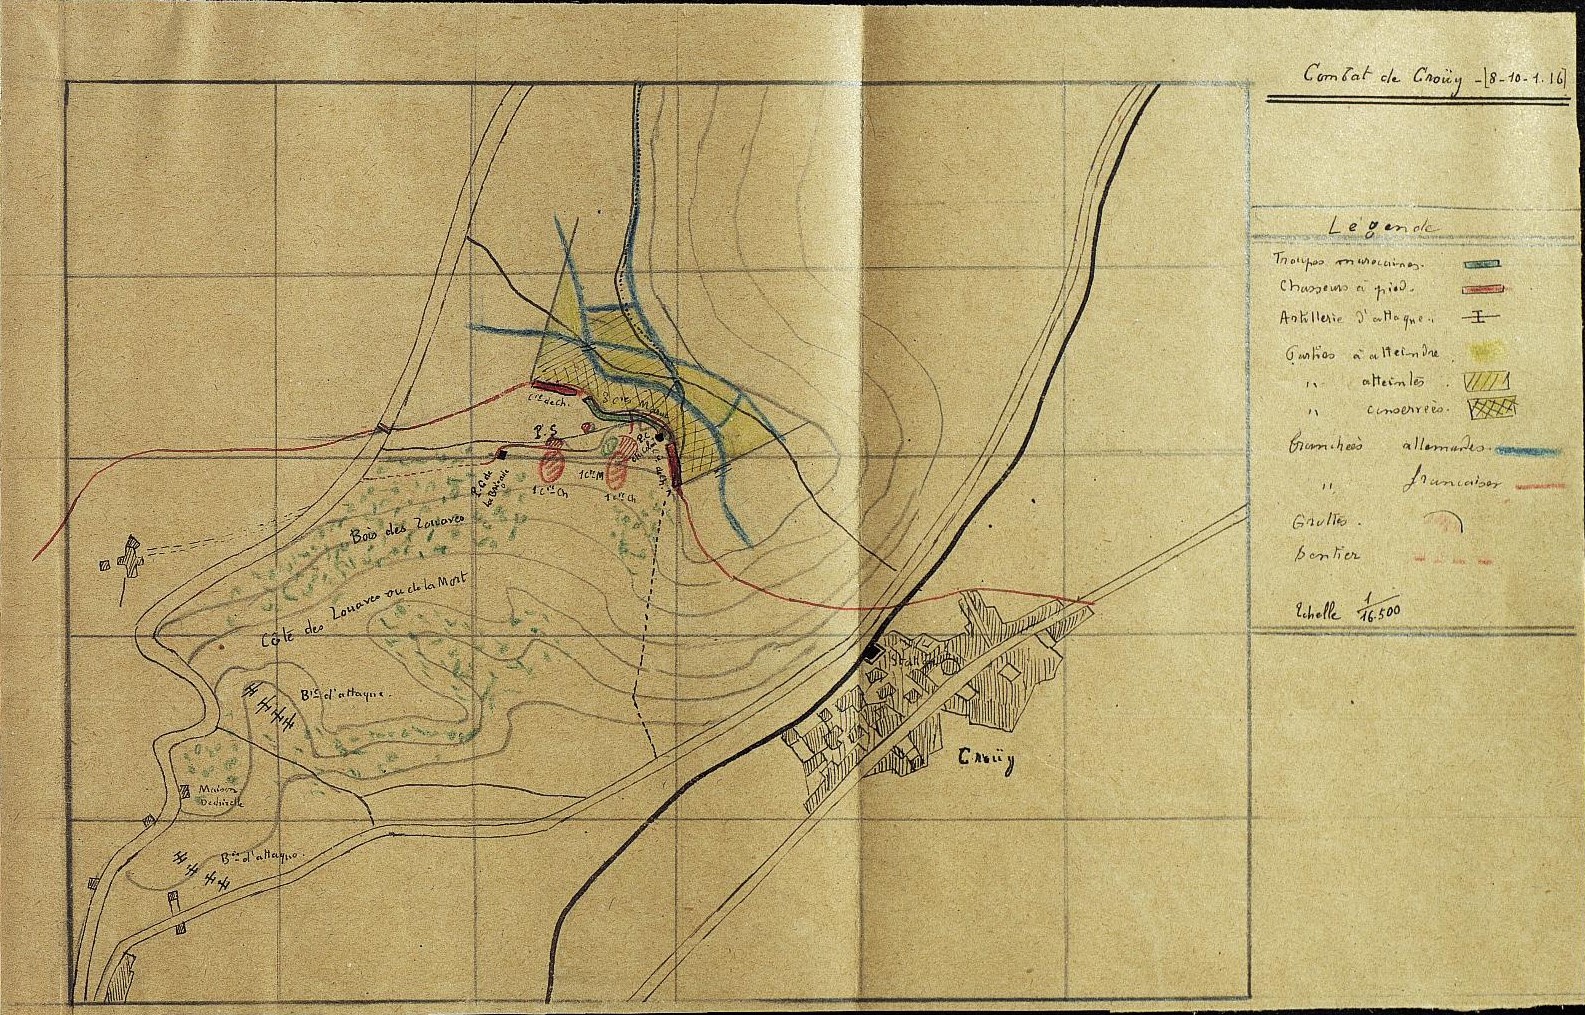 Le 55e bataillon de chasseurs à pied à Crouy les 8-9 janvier 1915